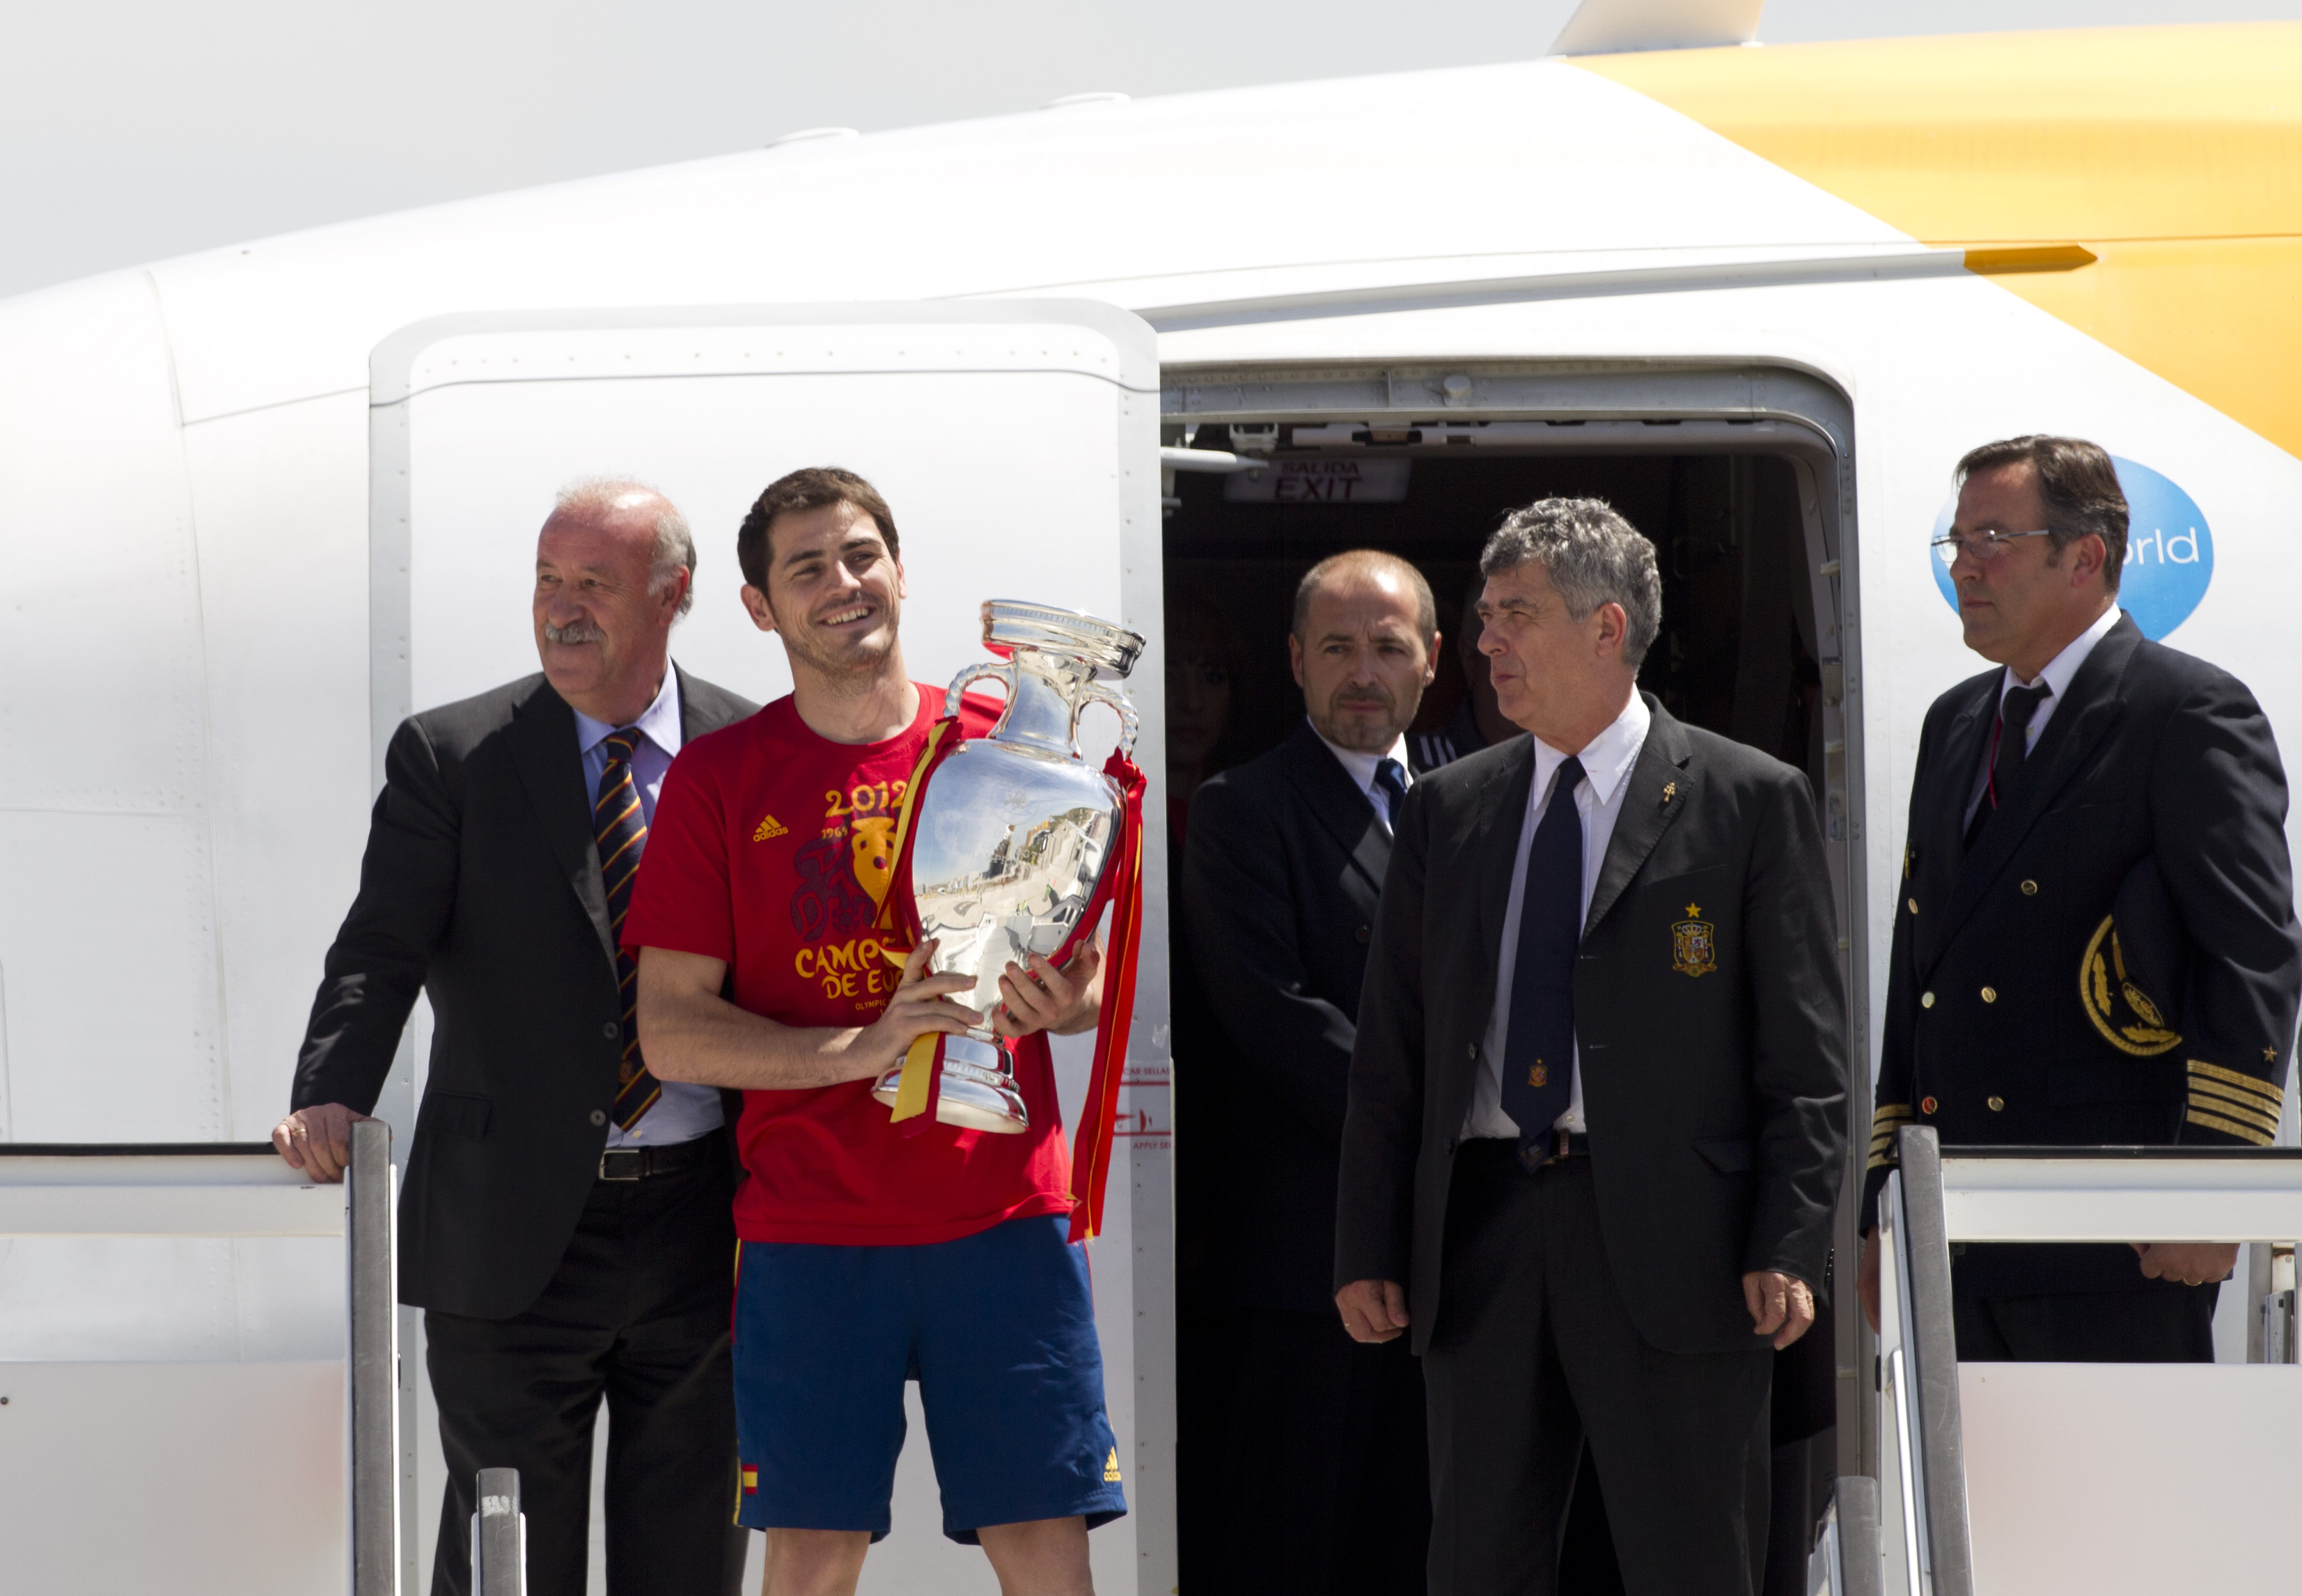 Spanien har vunnit tre stora mästerskap i rad: EM 2008, VM 2010 och nu EM 2012.